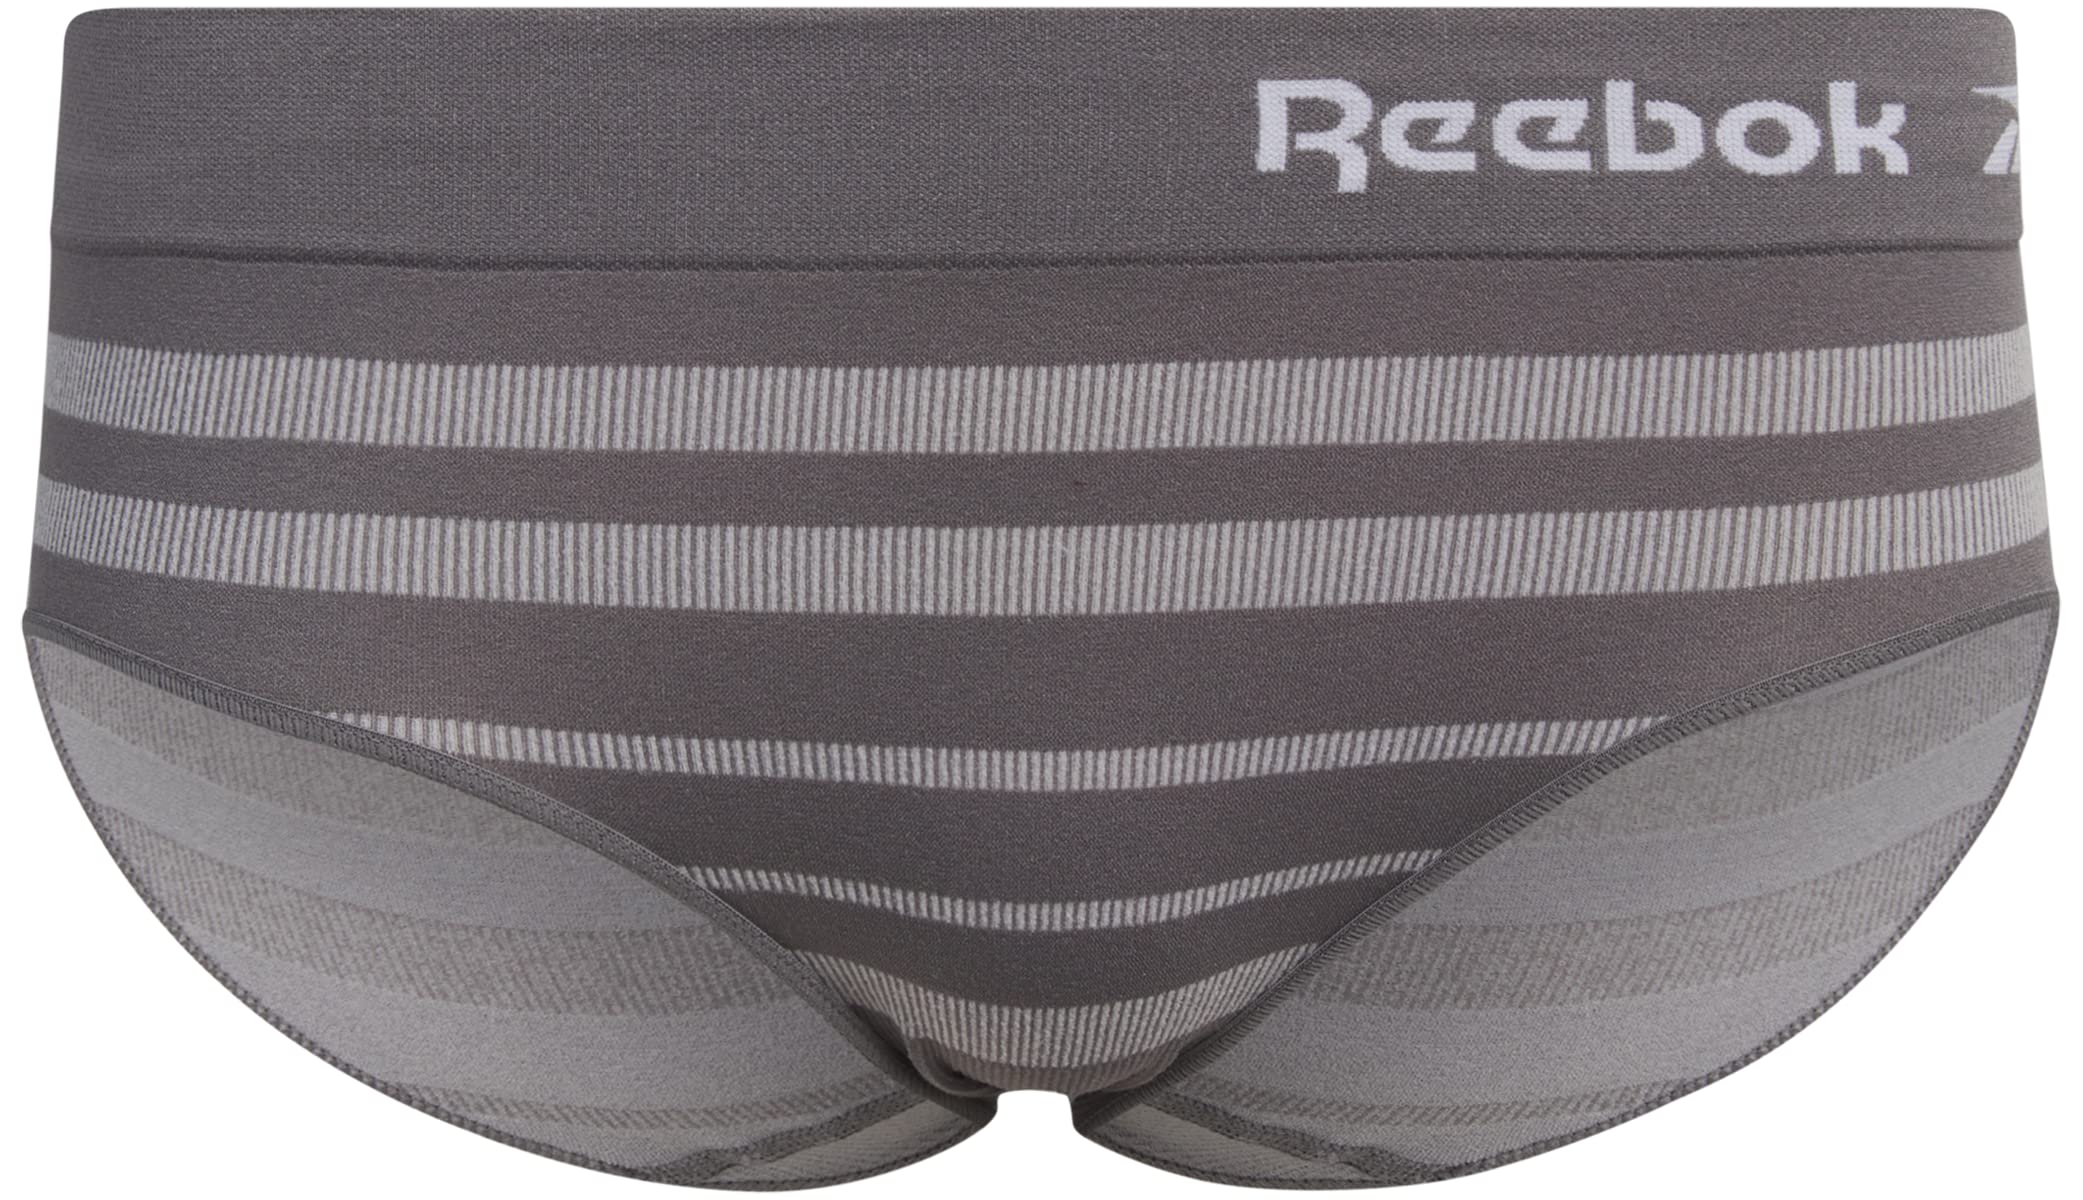 Reebok Women's Underwear - Seamless Hipster Briefs (4 Pack)